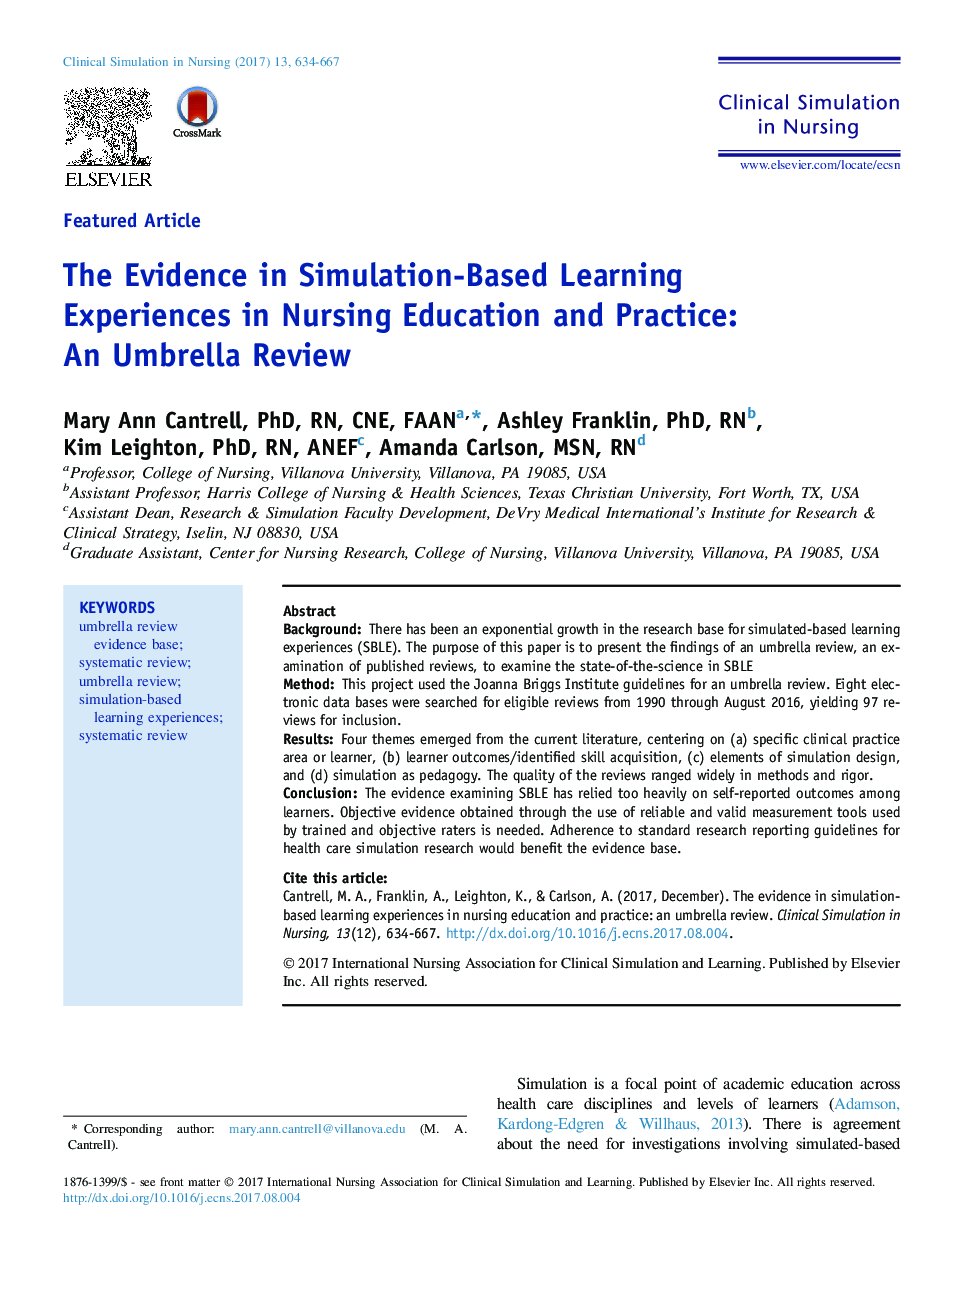 شواهد در تجربیات یادگیری مبتنی بر شبیه سازی در آموزش و پرورش پرستاری: مرور چتر 